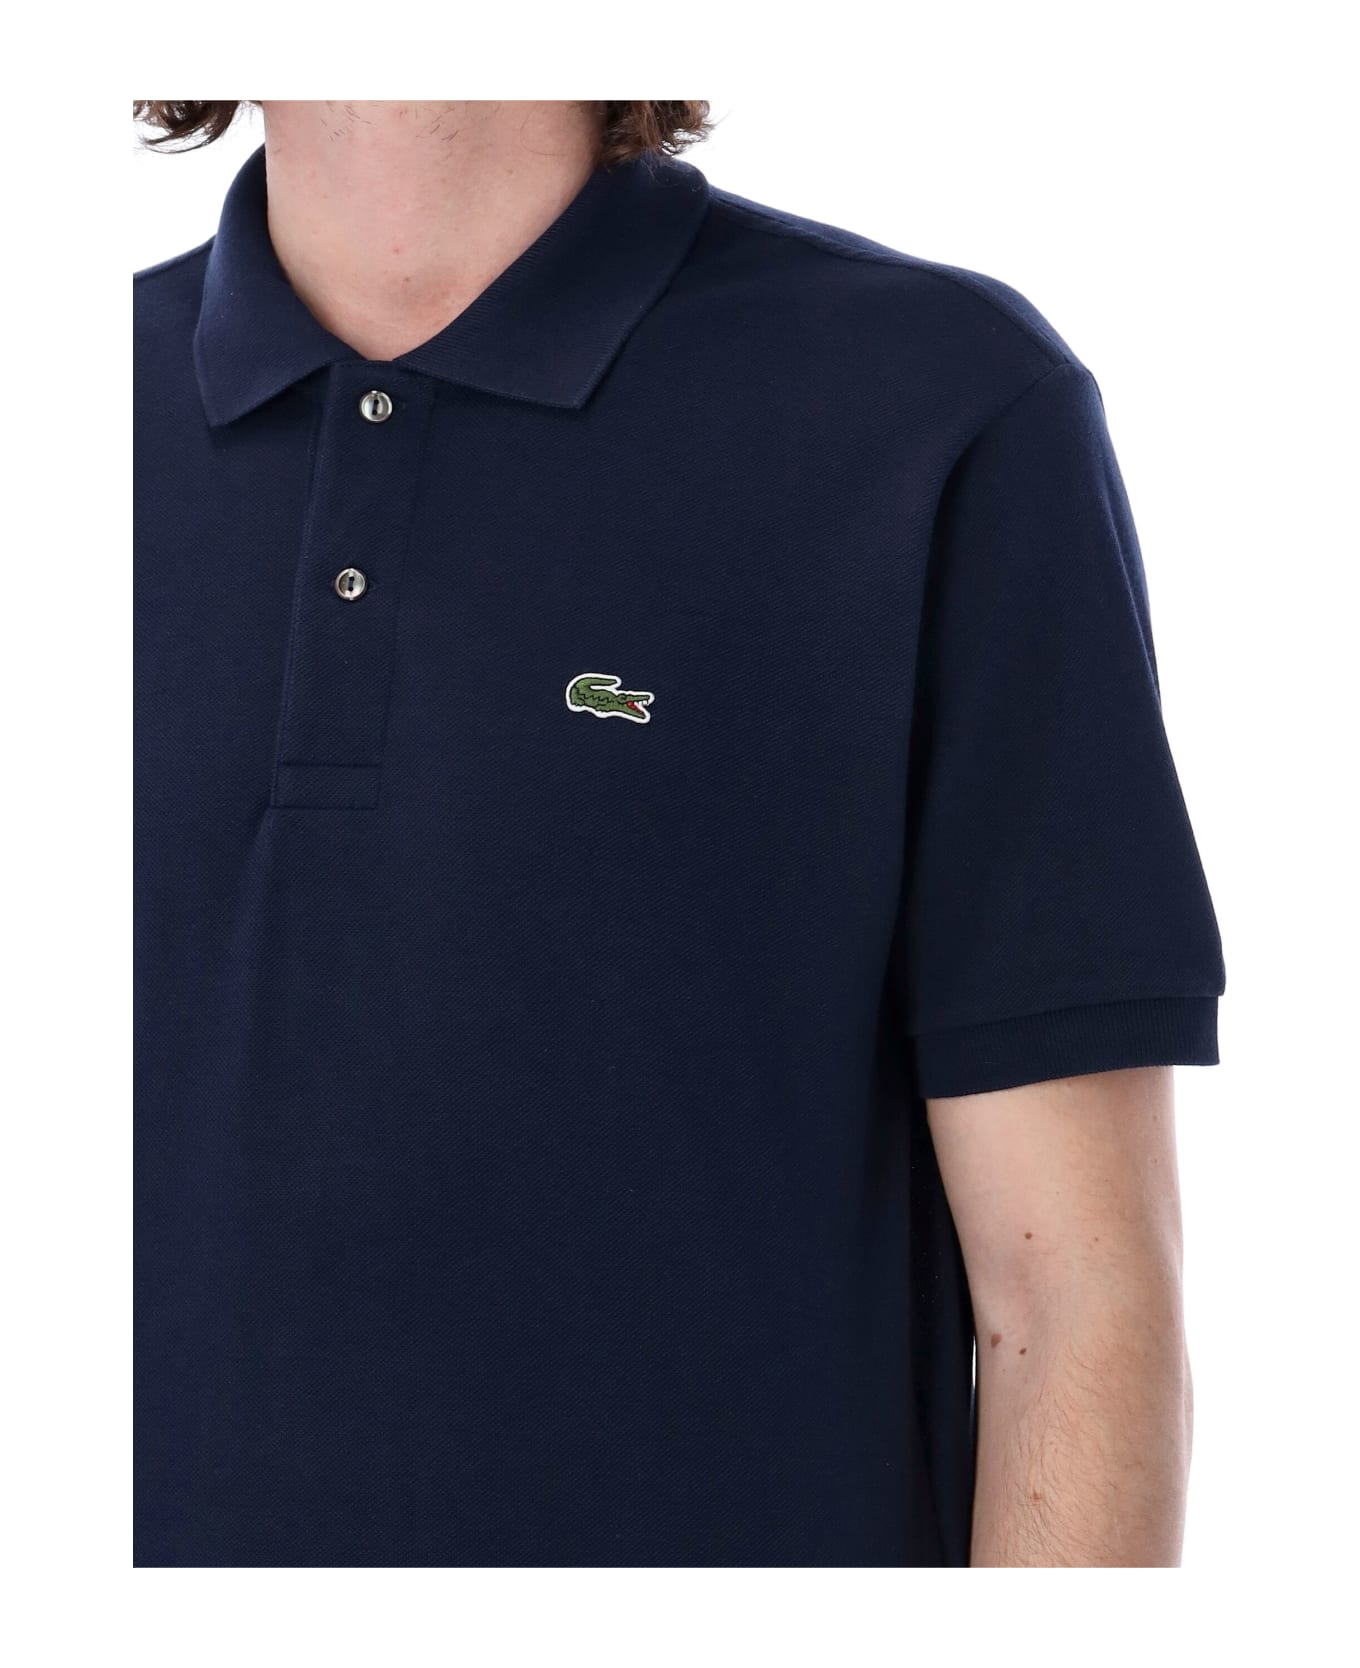 Lacoste Classic Fit Polo preto Shirt - MARINE